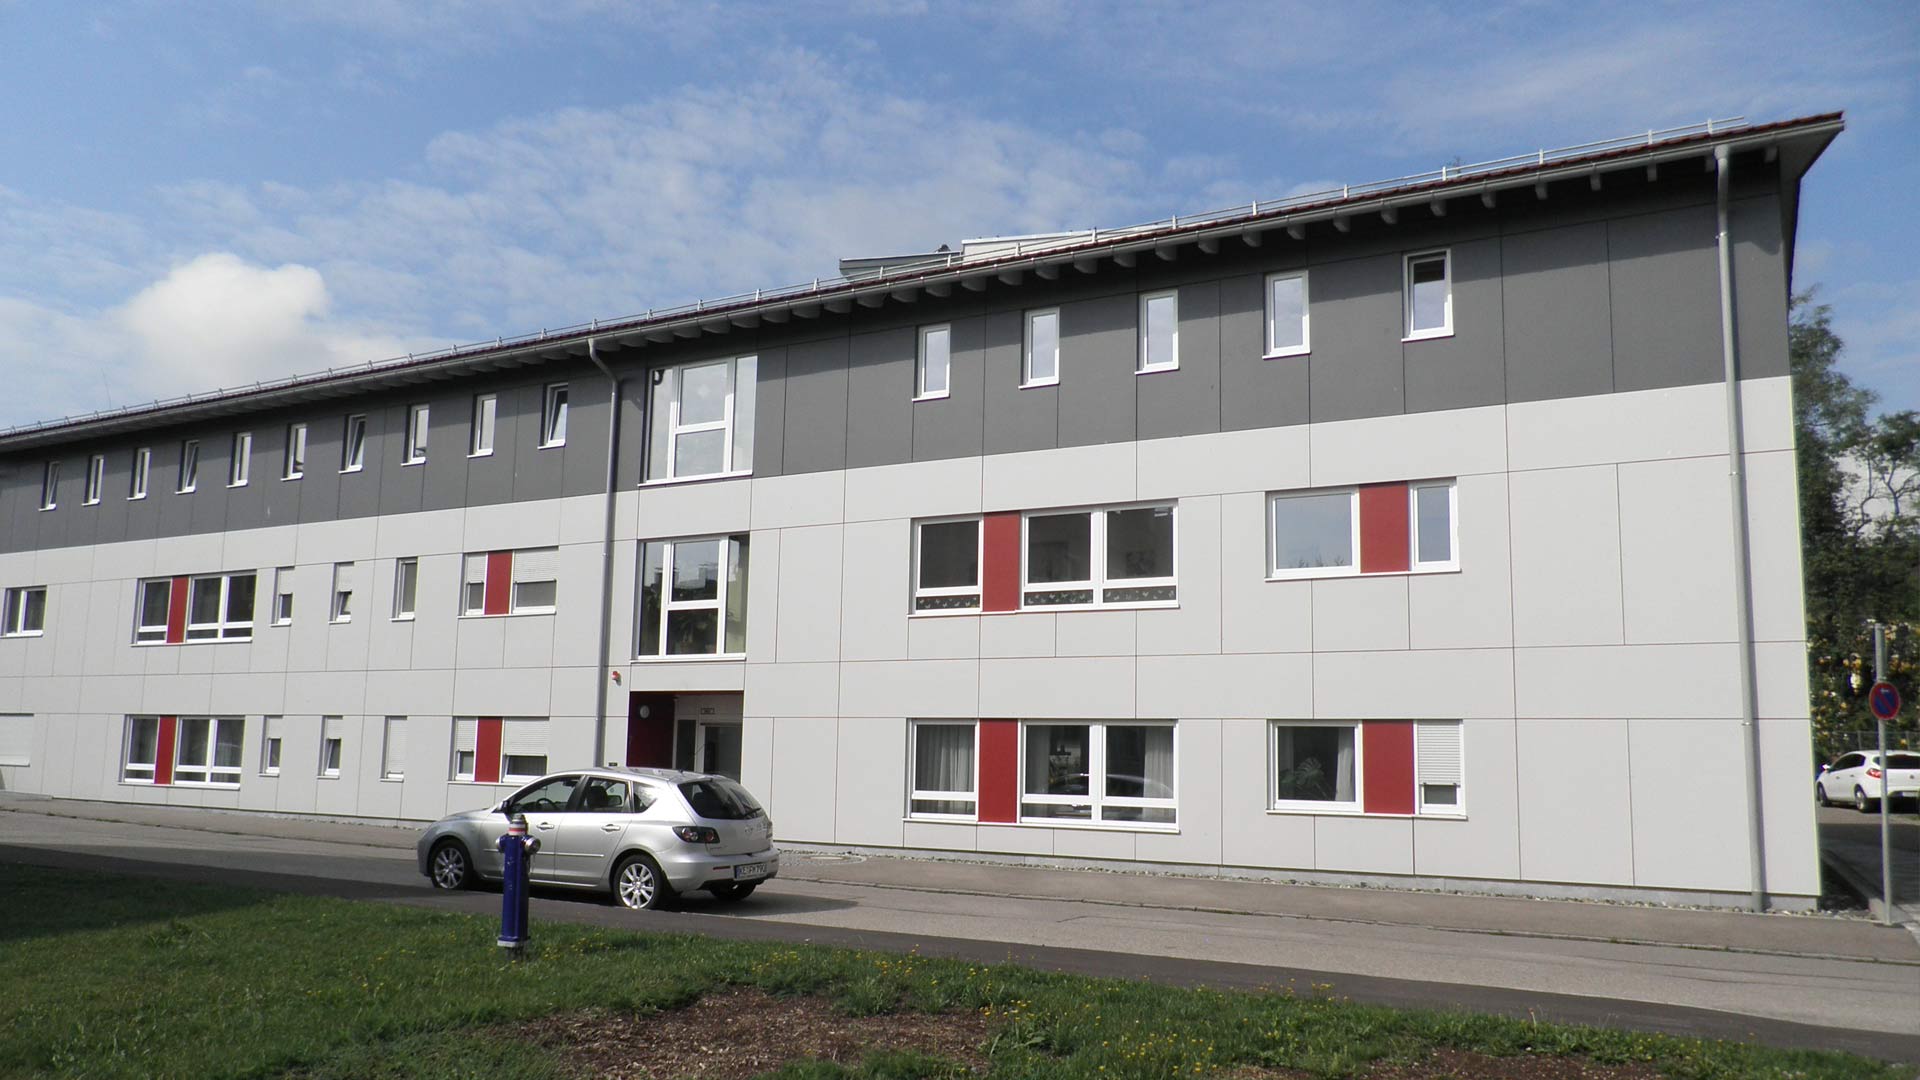 Impression des Wohnheims für Körperbehinderte in Kempten - ein Projekt der Knecht Ingenieure GmbH